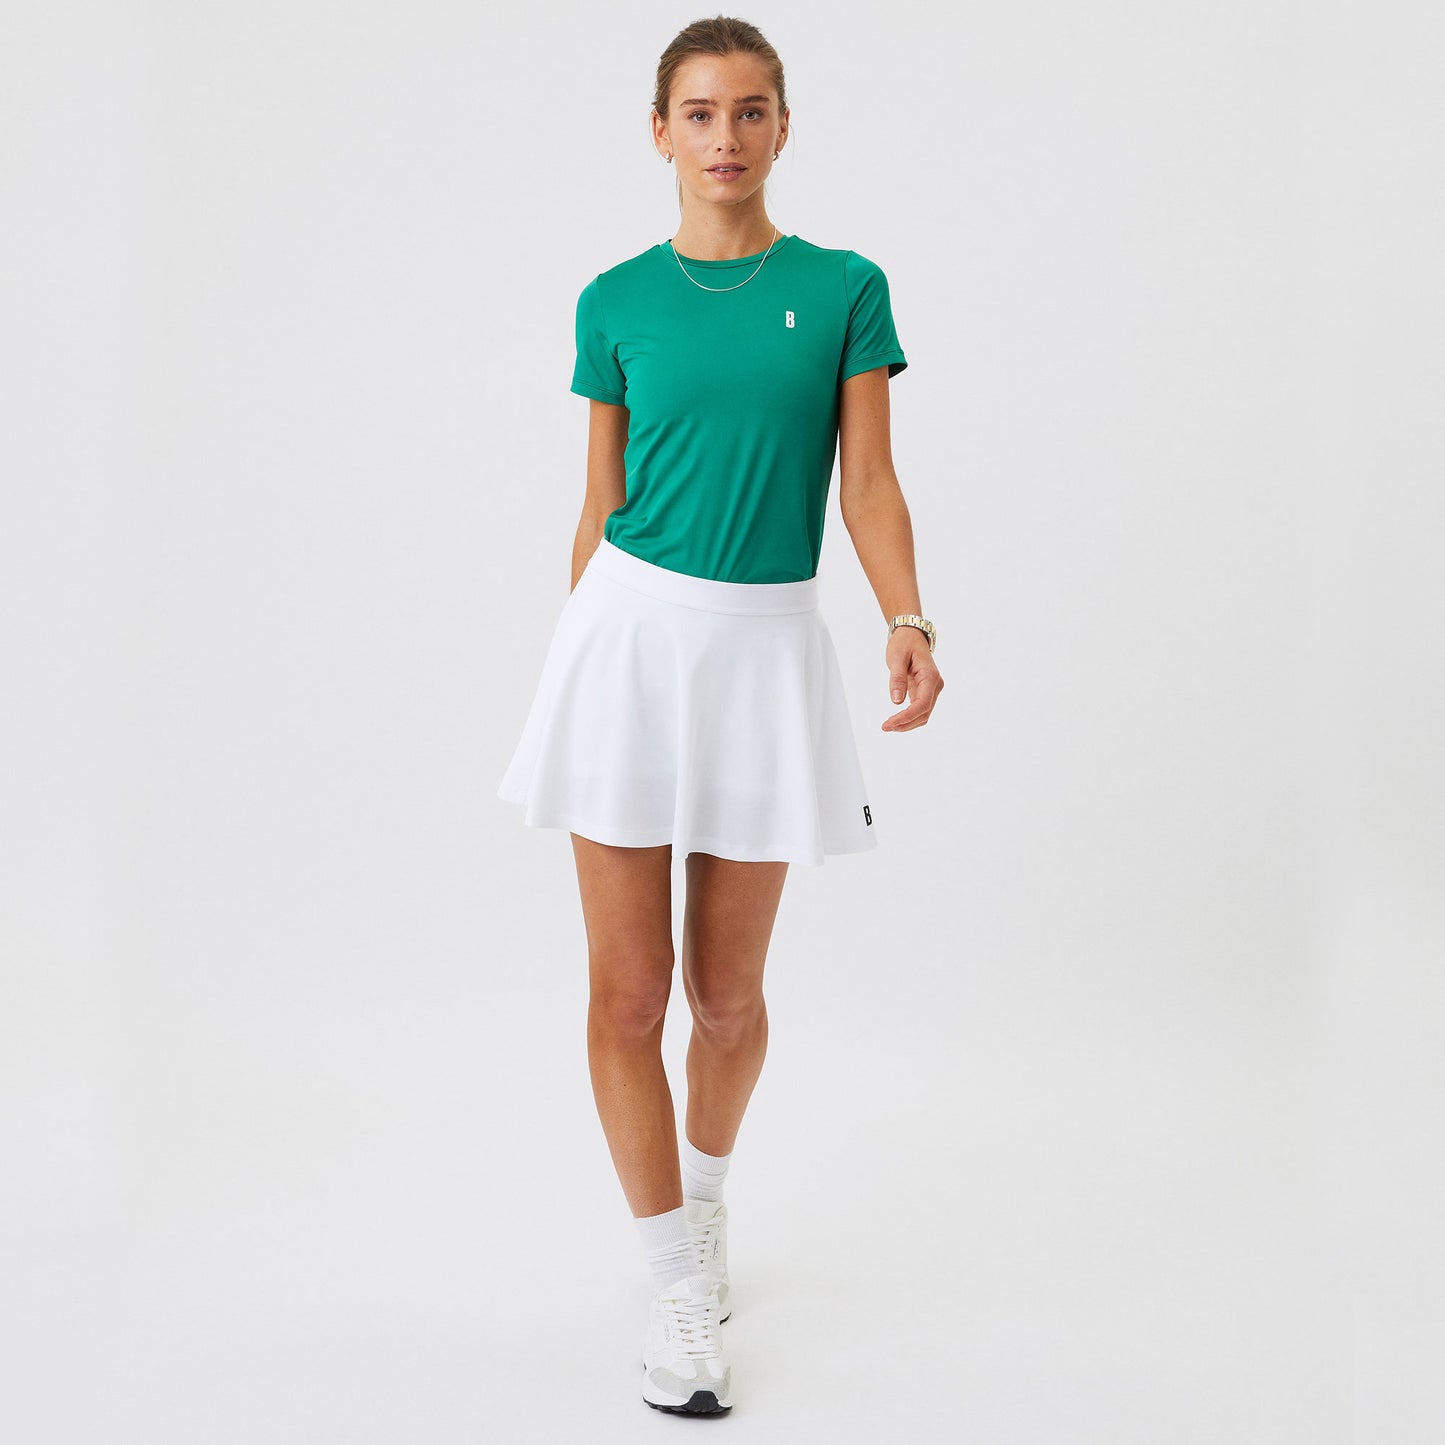 Björn Borg Ace Women's Tennis Skirt White (4)